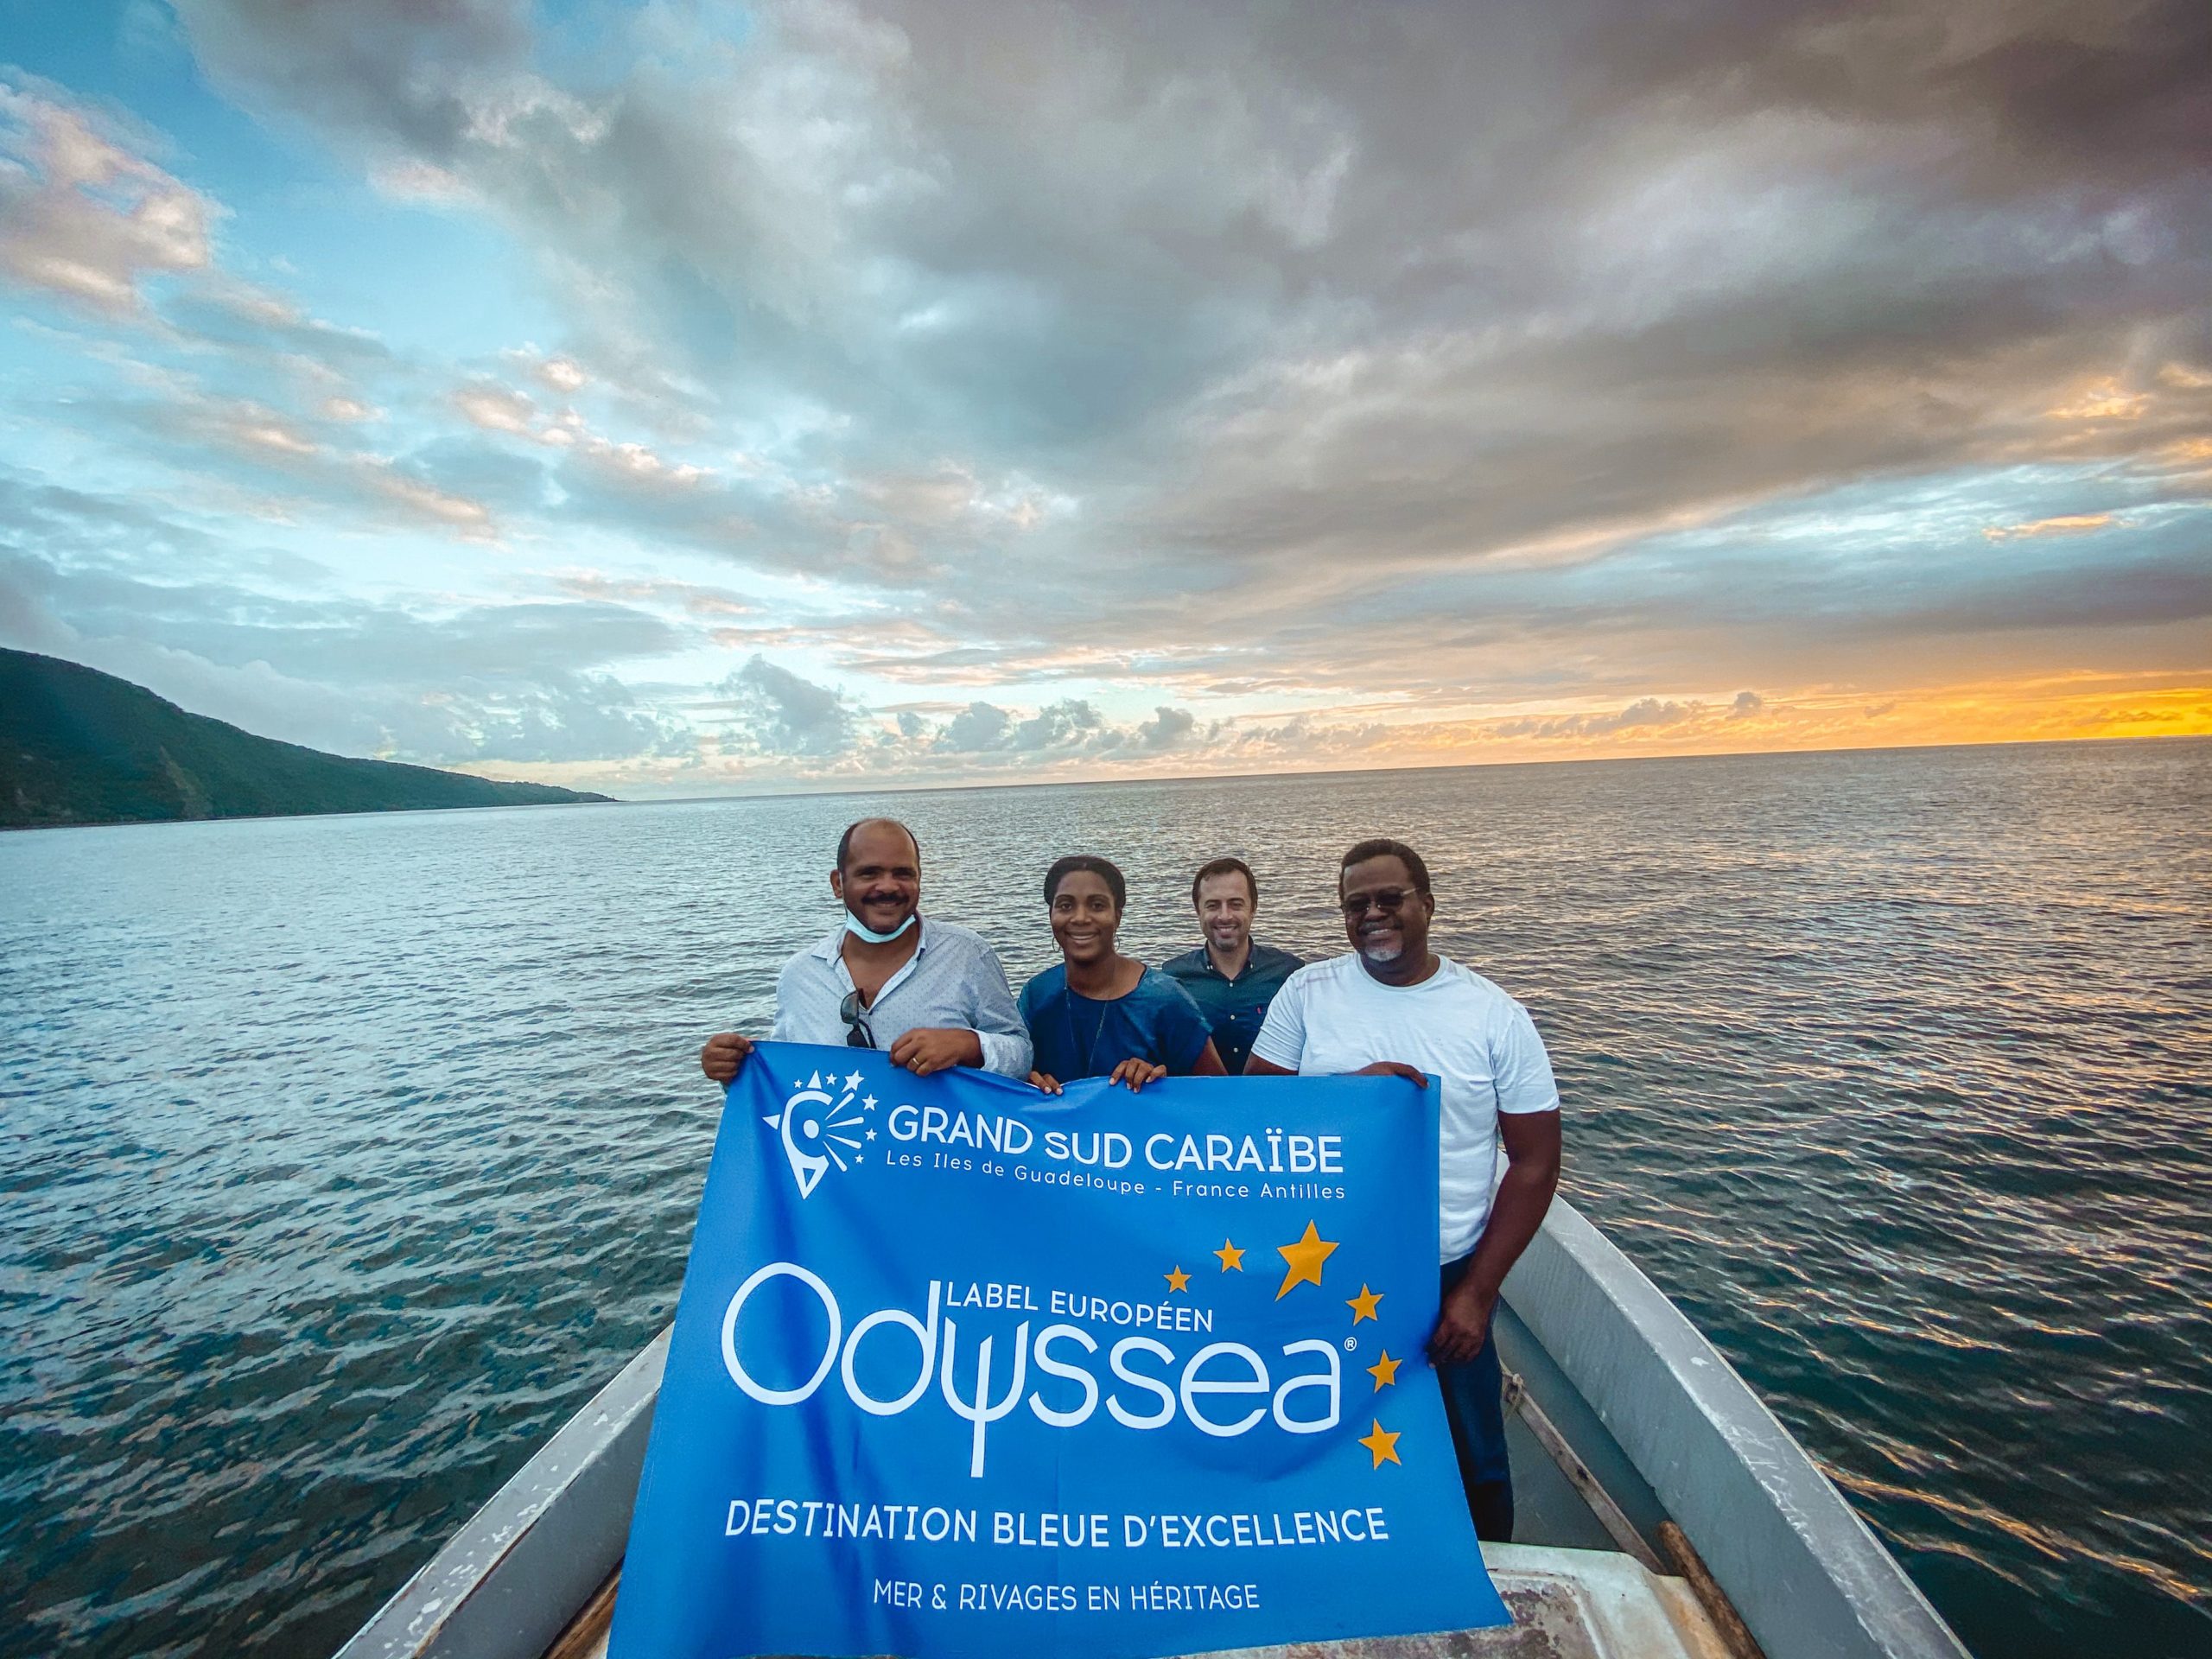     Grand Sud Caraïbe mise sur le tourisme bleu avec le label Odyssea

